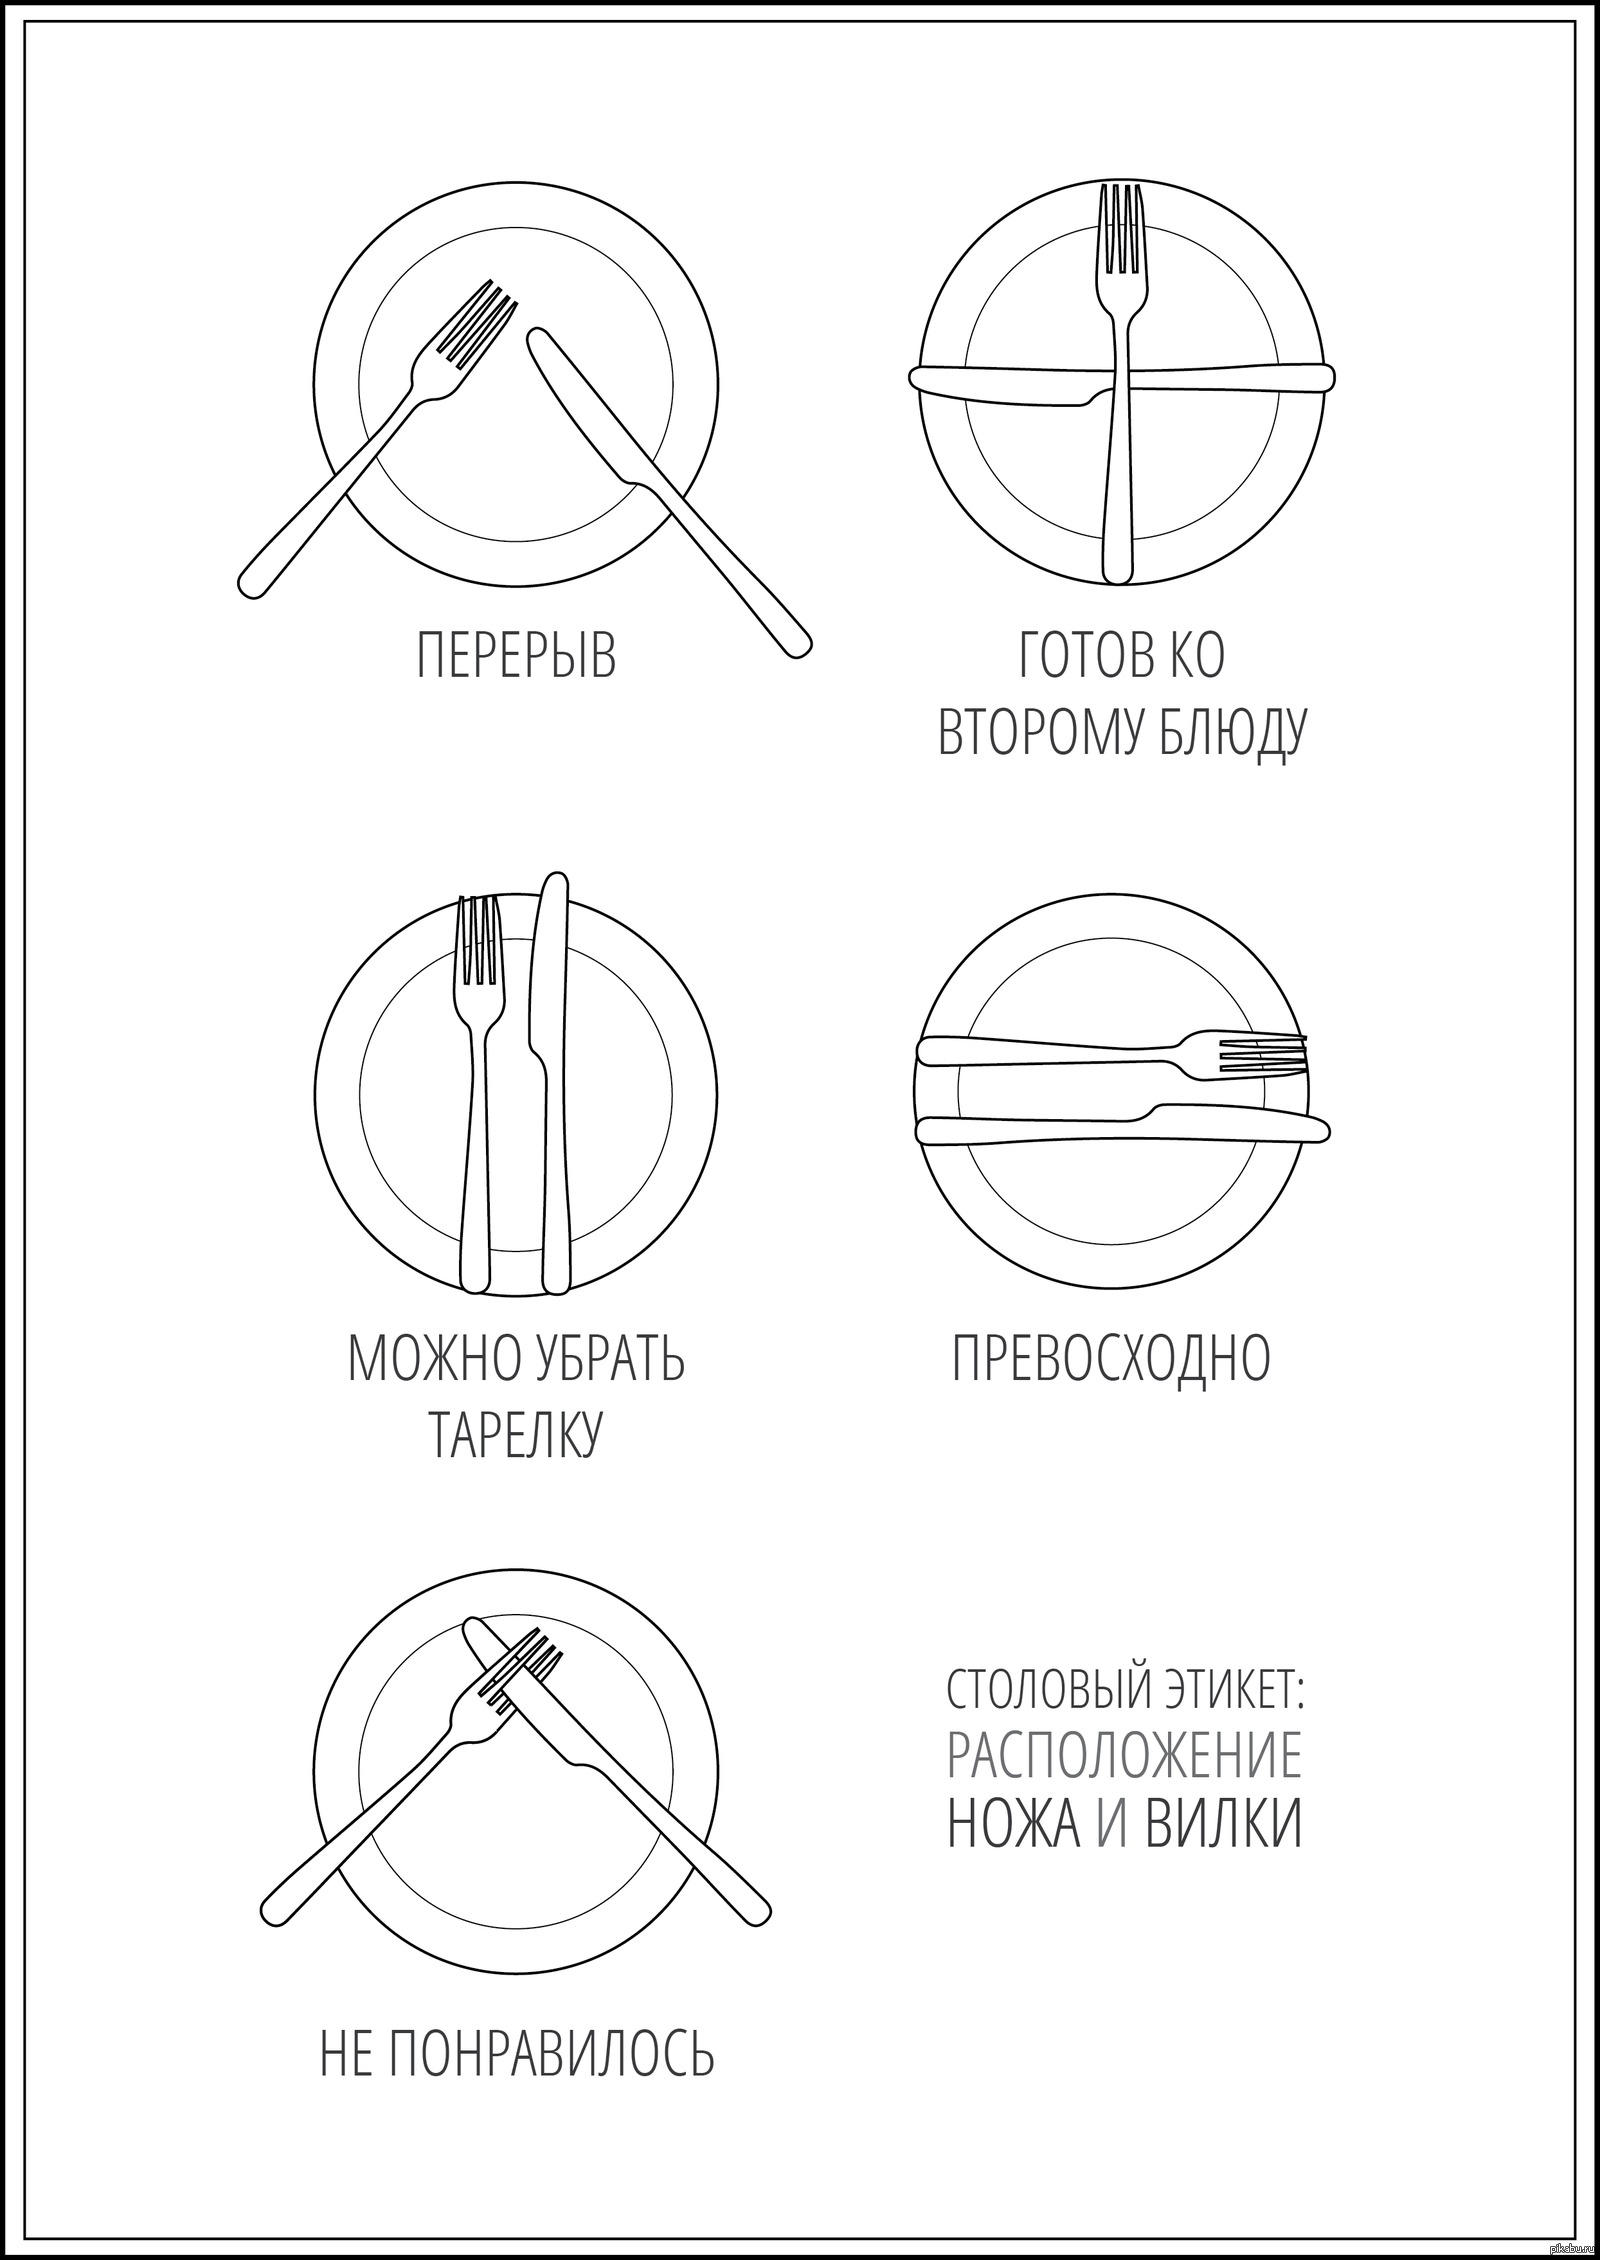 Как правильно пользоваться вилкой и ножом